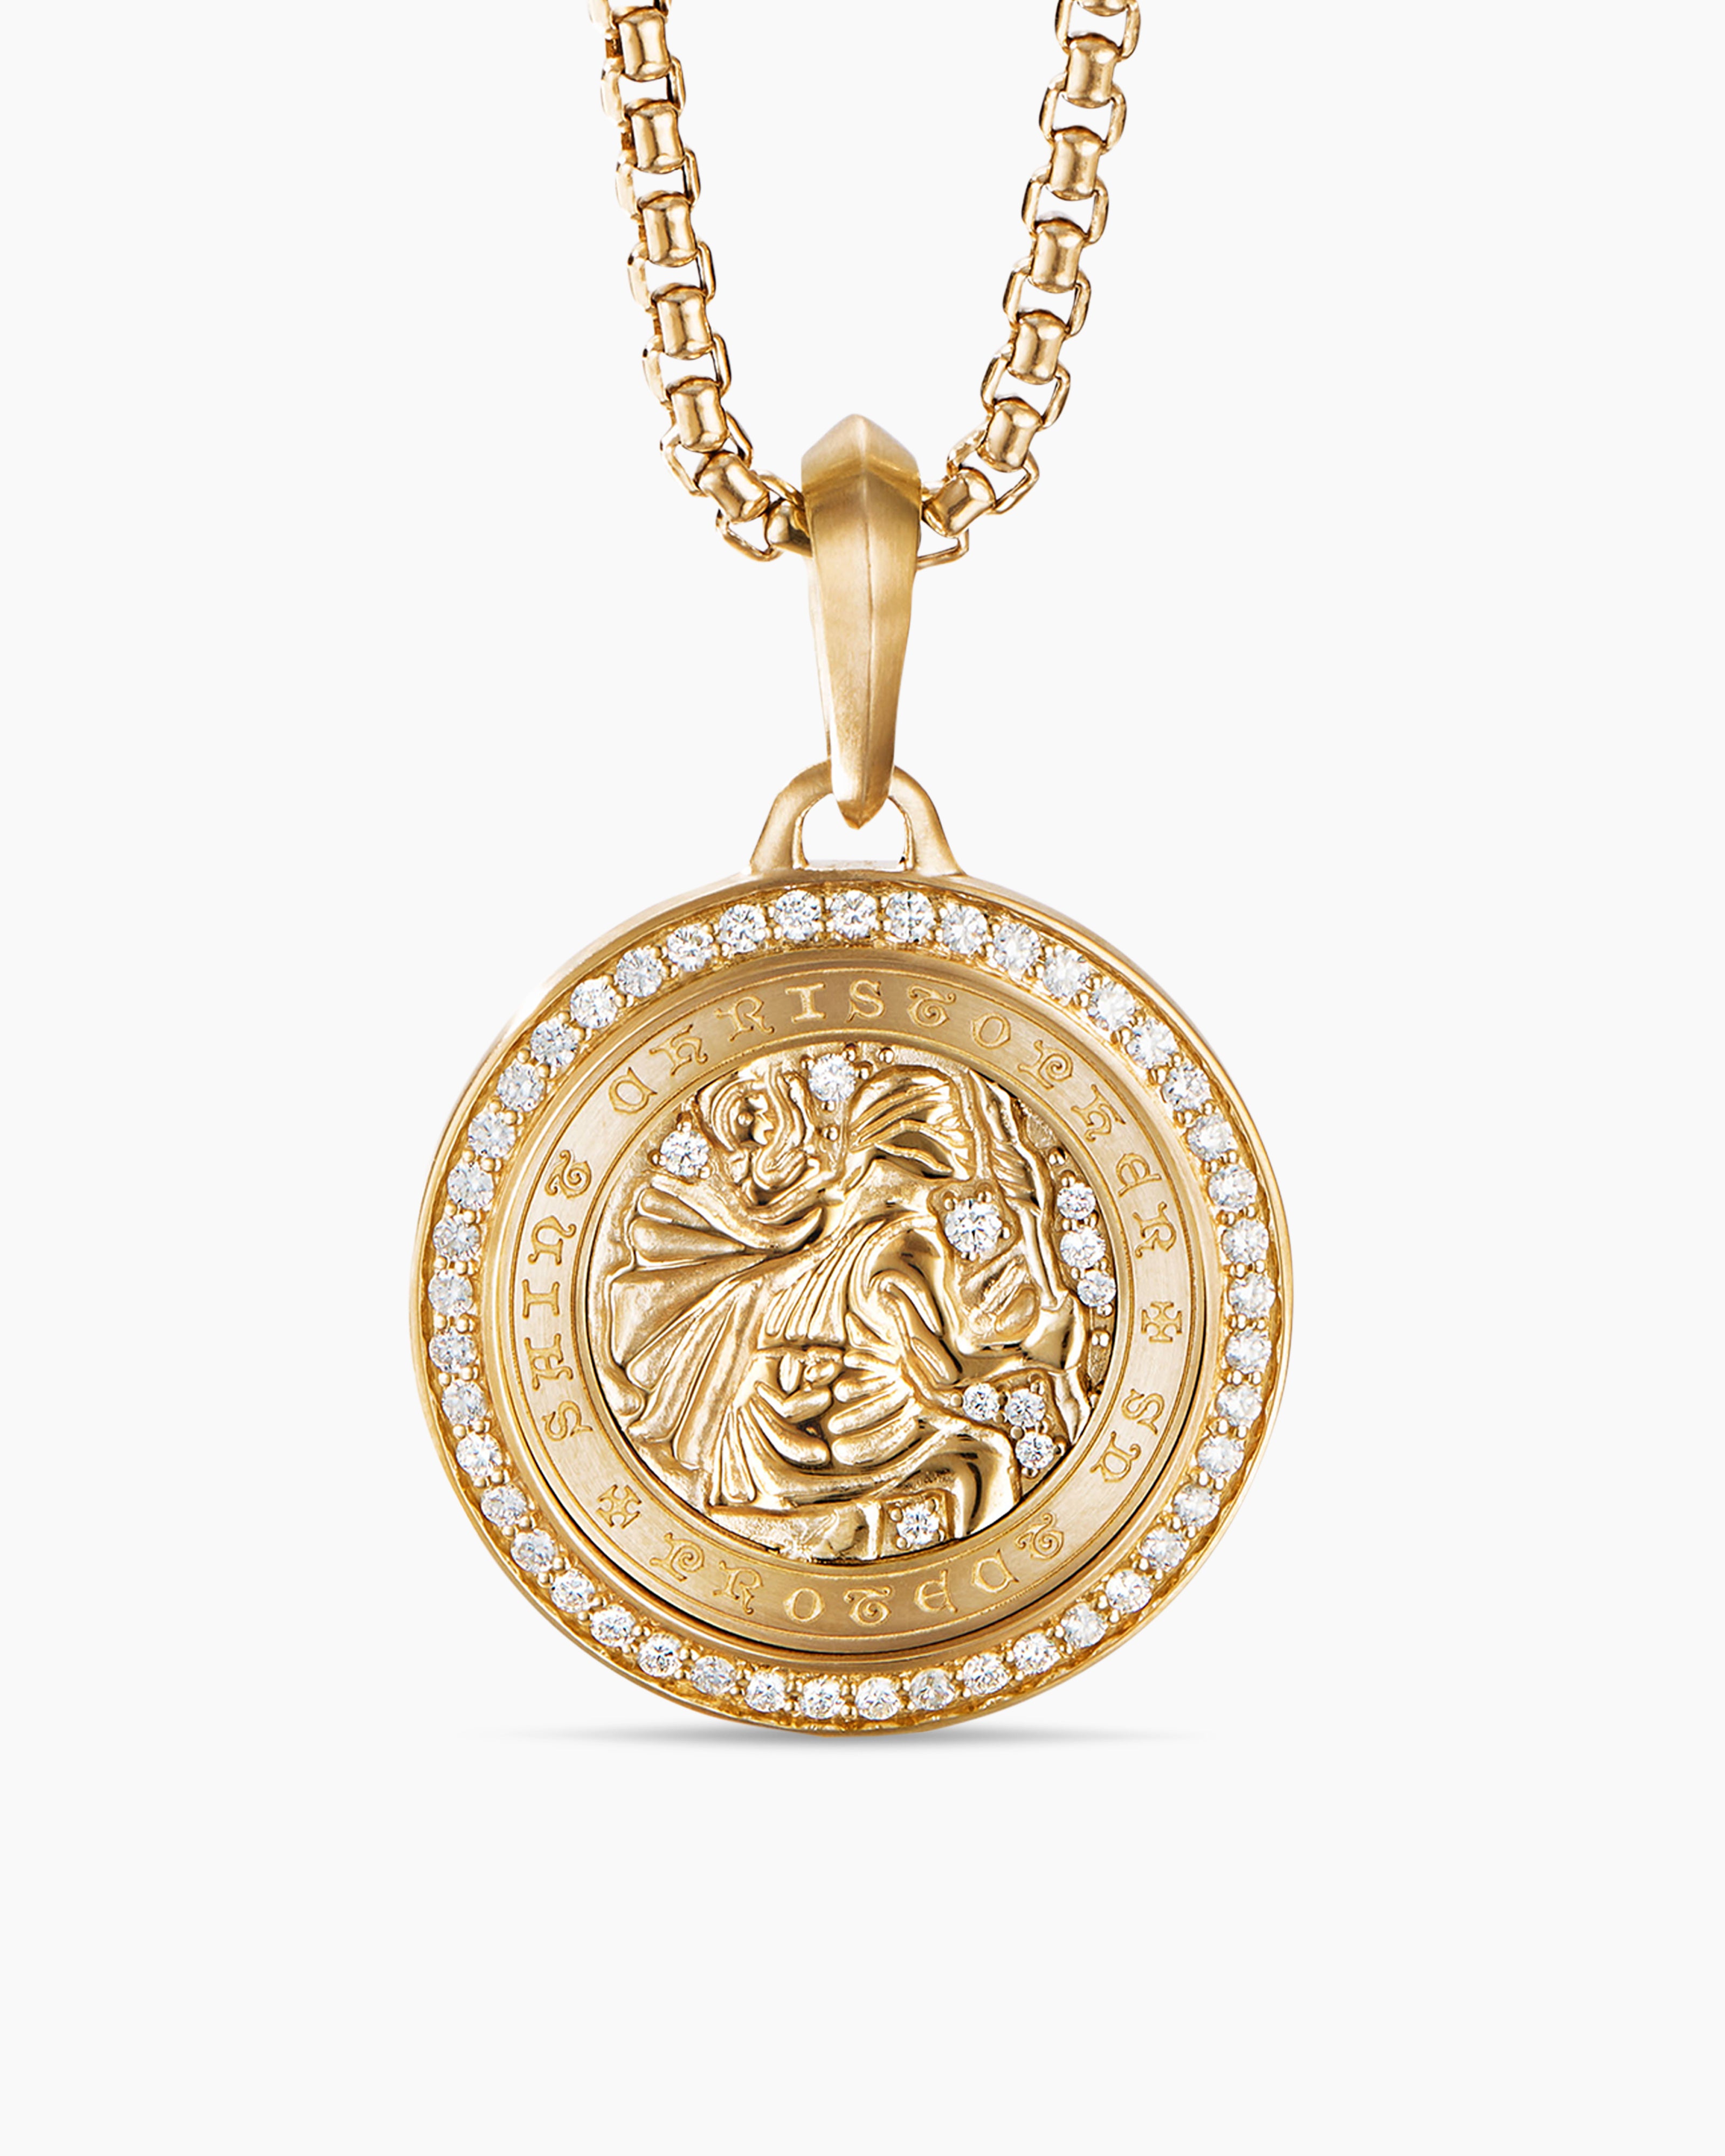 Gold Saint Christopher Medallion Ring